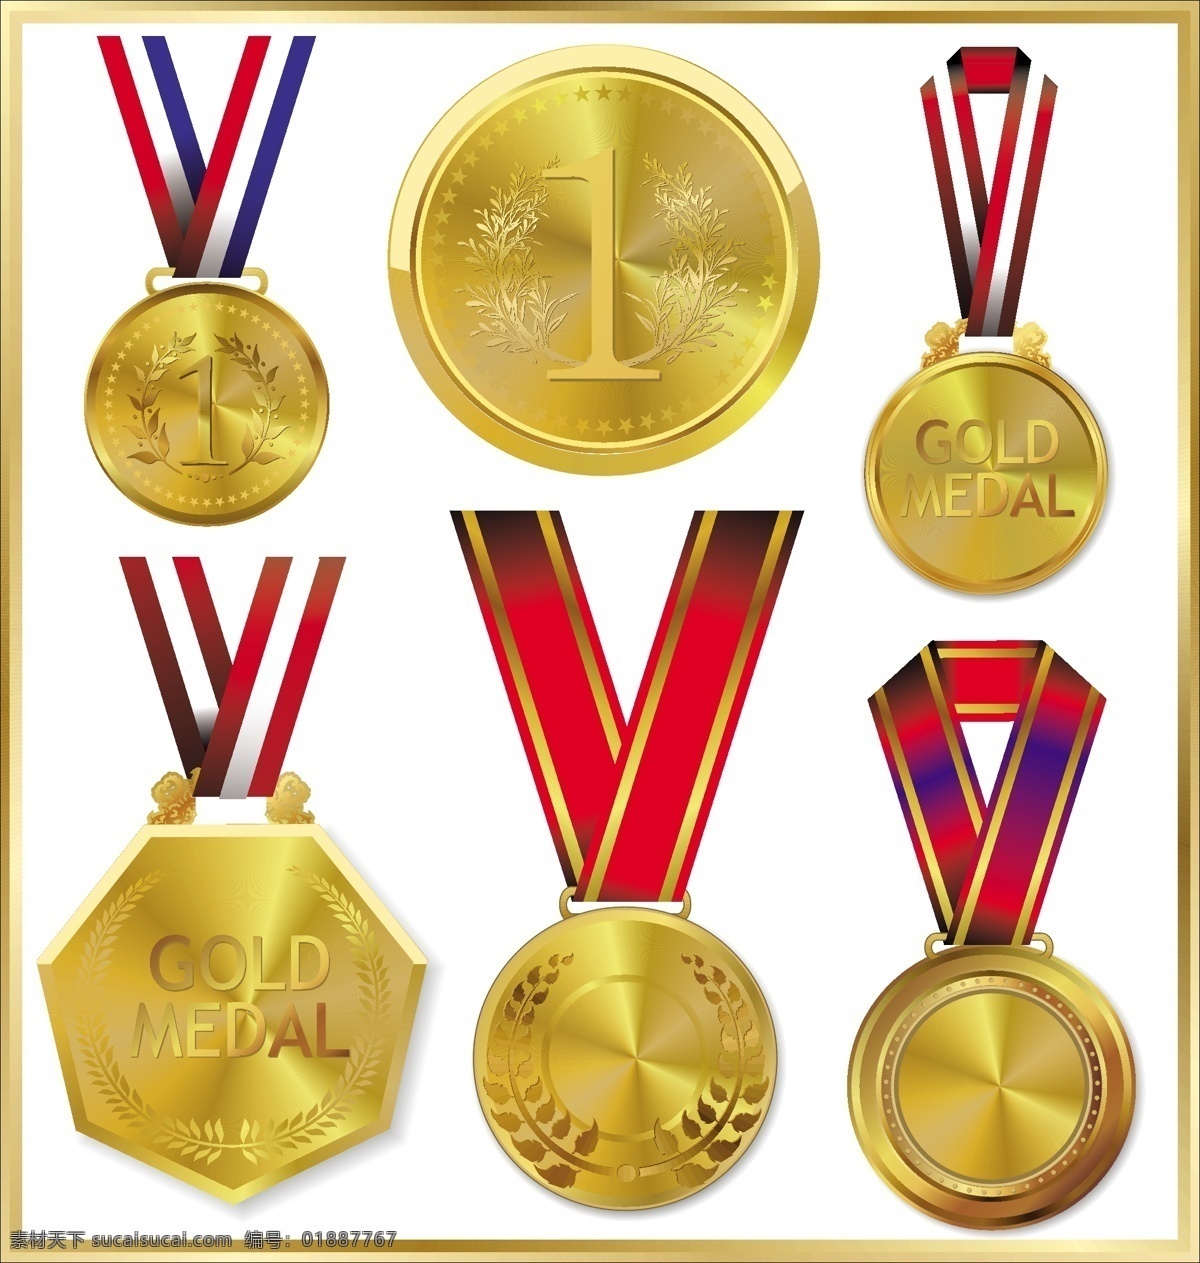 荣誉 金牌 矢量 模板下载 奖牌 冠军 金属奖牌 体育运动 金融货币 商务金融 矢量素材 白色